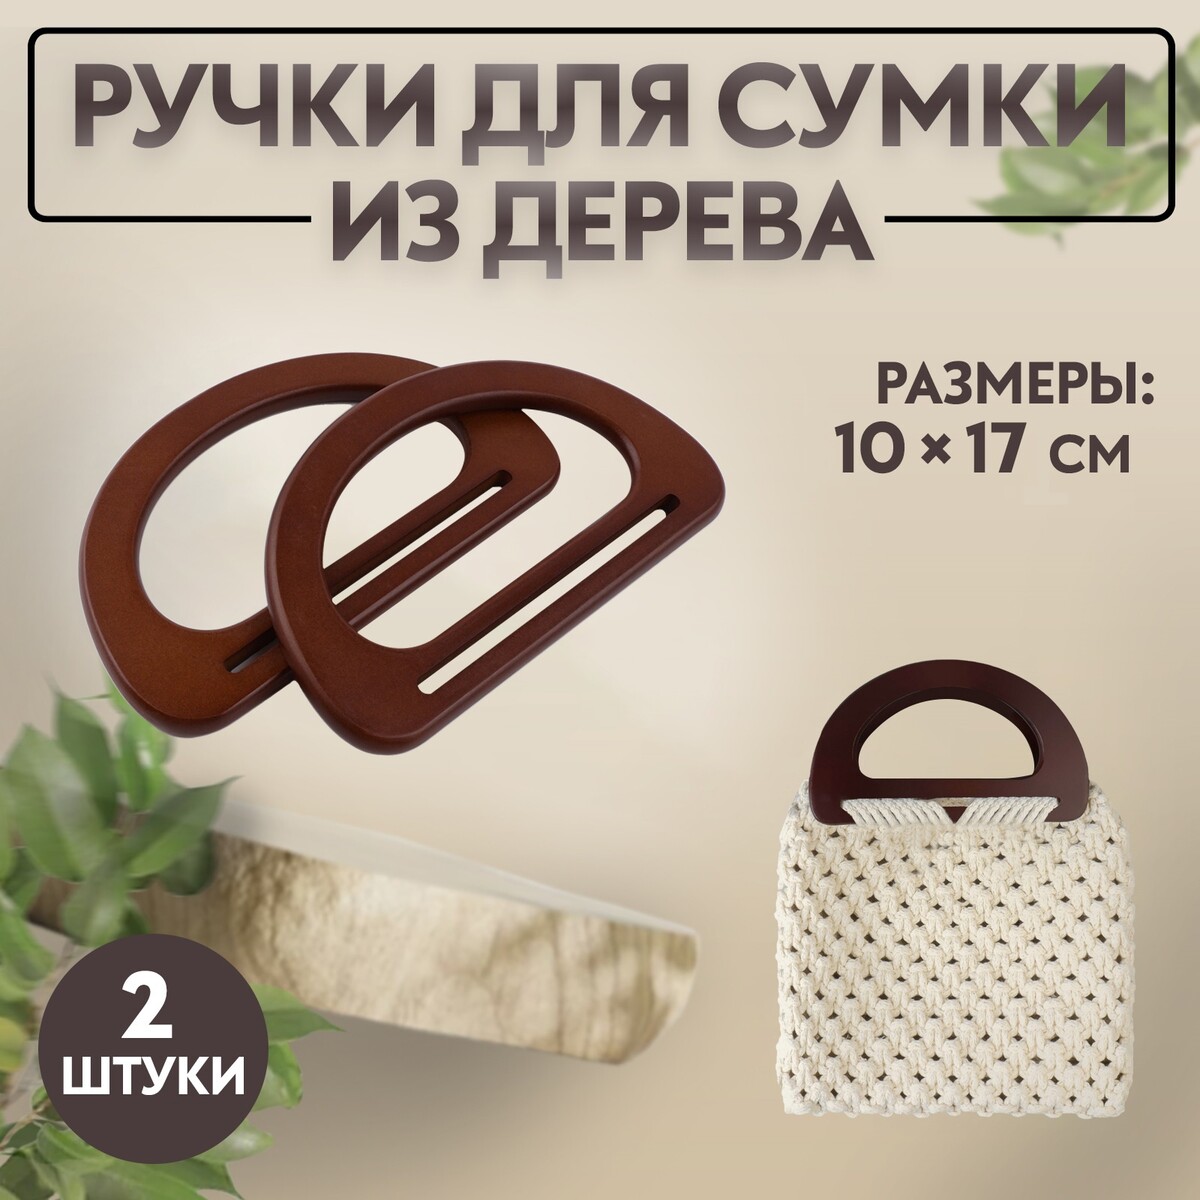 Ручки для сумки деревянные, 10 × 17 см, 2 шт, цвет темно-коричневый ручки для сумки деревянные 12 × 8 5 см 2 шт темно коричневый